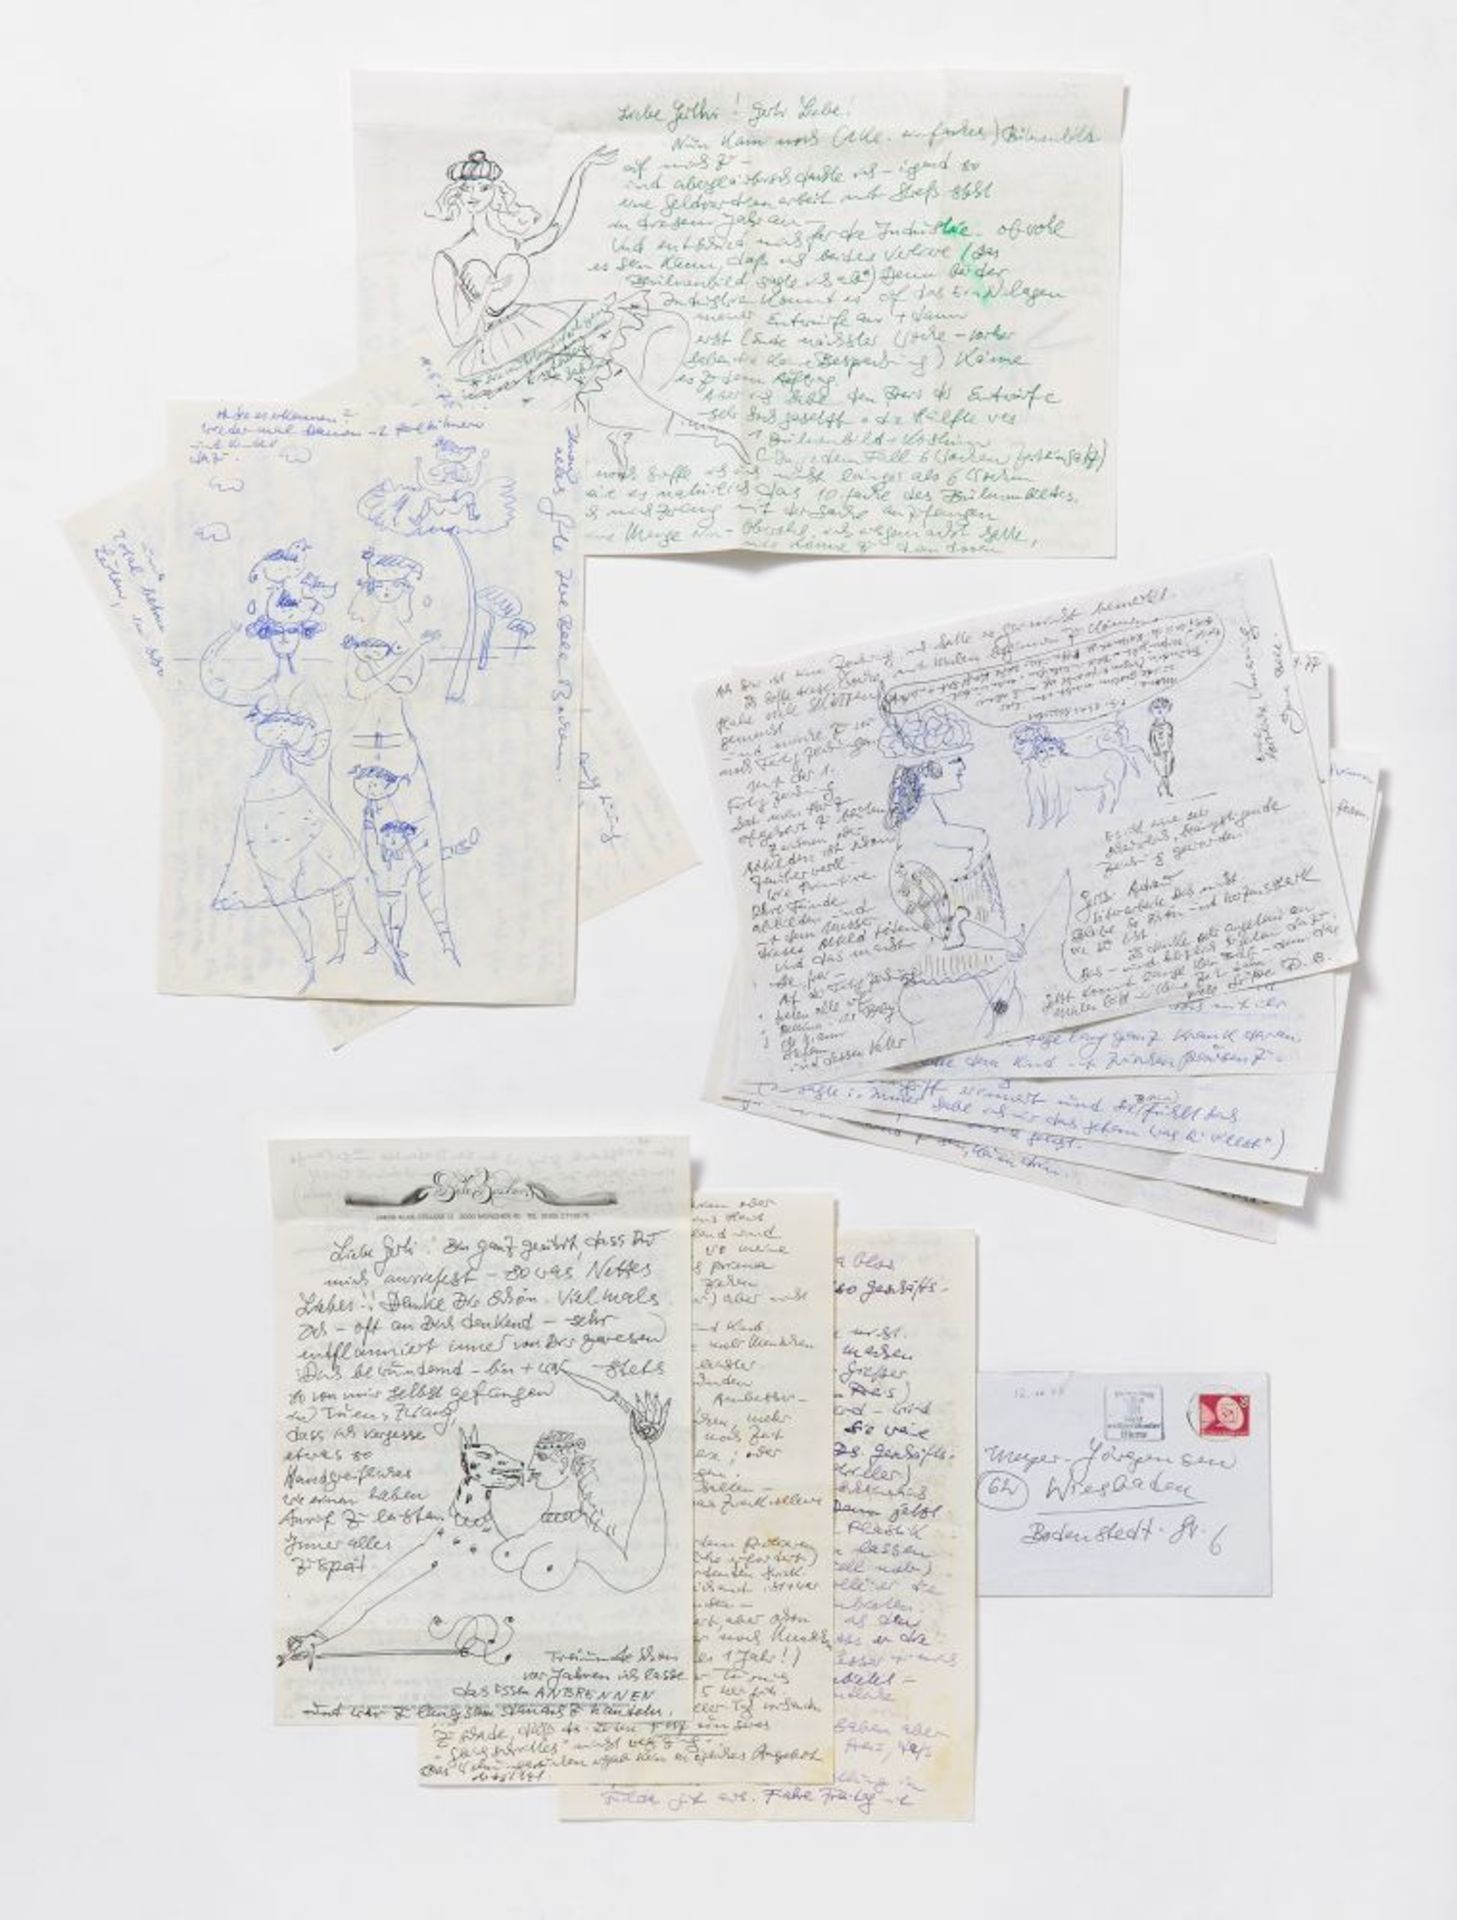 Bele Bachem, 40 eigh. Briefe, Karten, t. mit Zeichnungen. Von ca. 1974 bis um 2003. - An Gertrude Me - Bild 4 aus 12